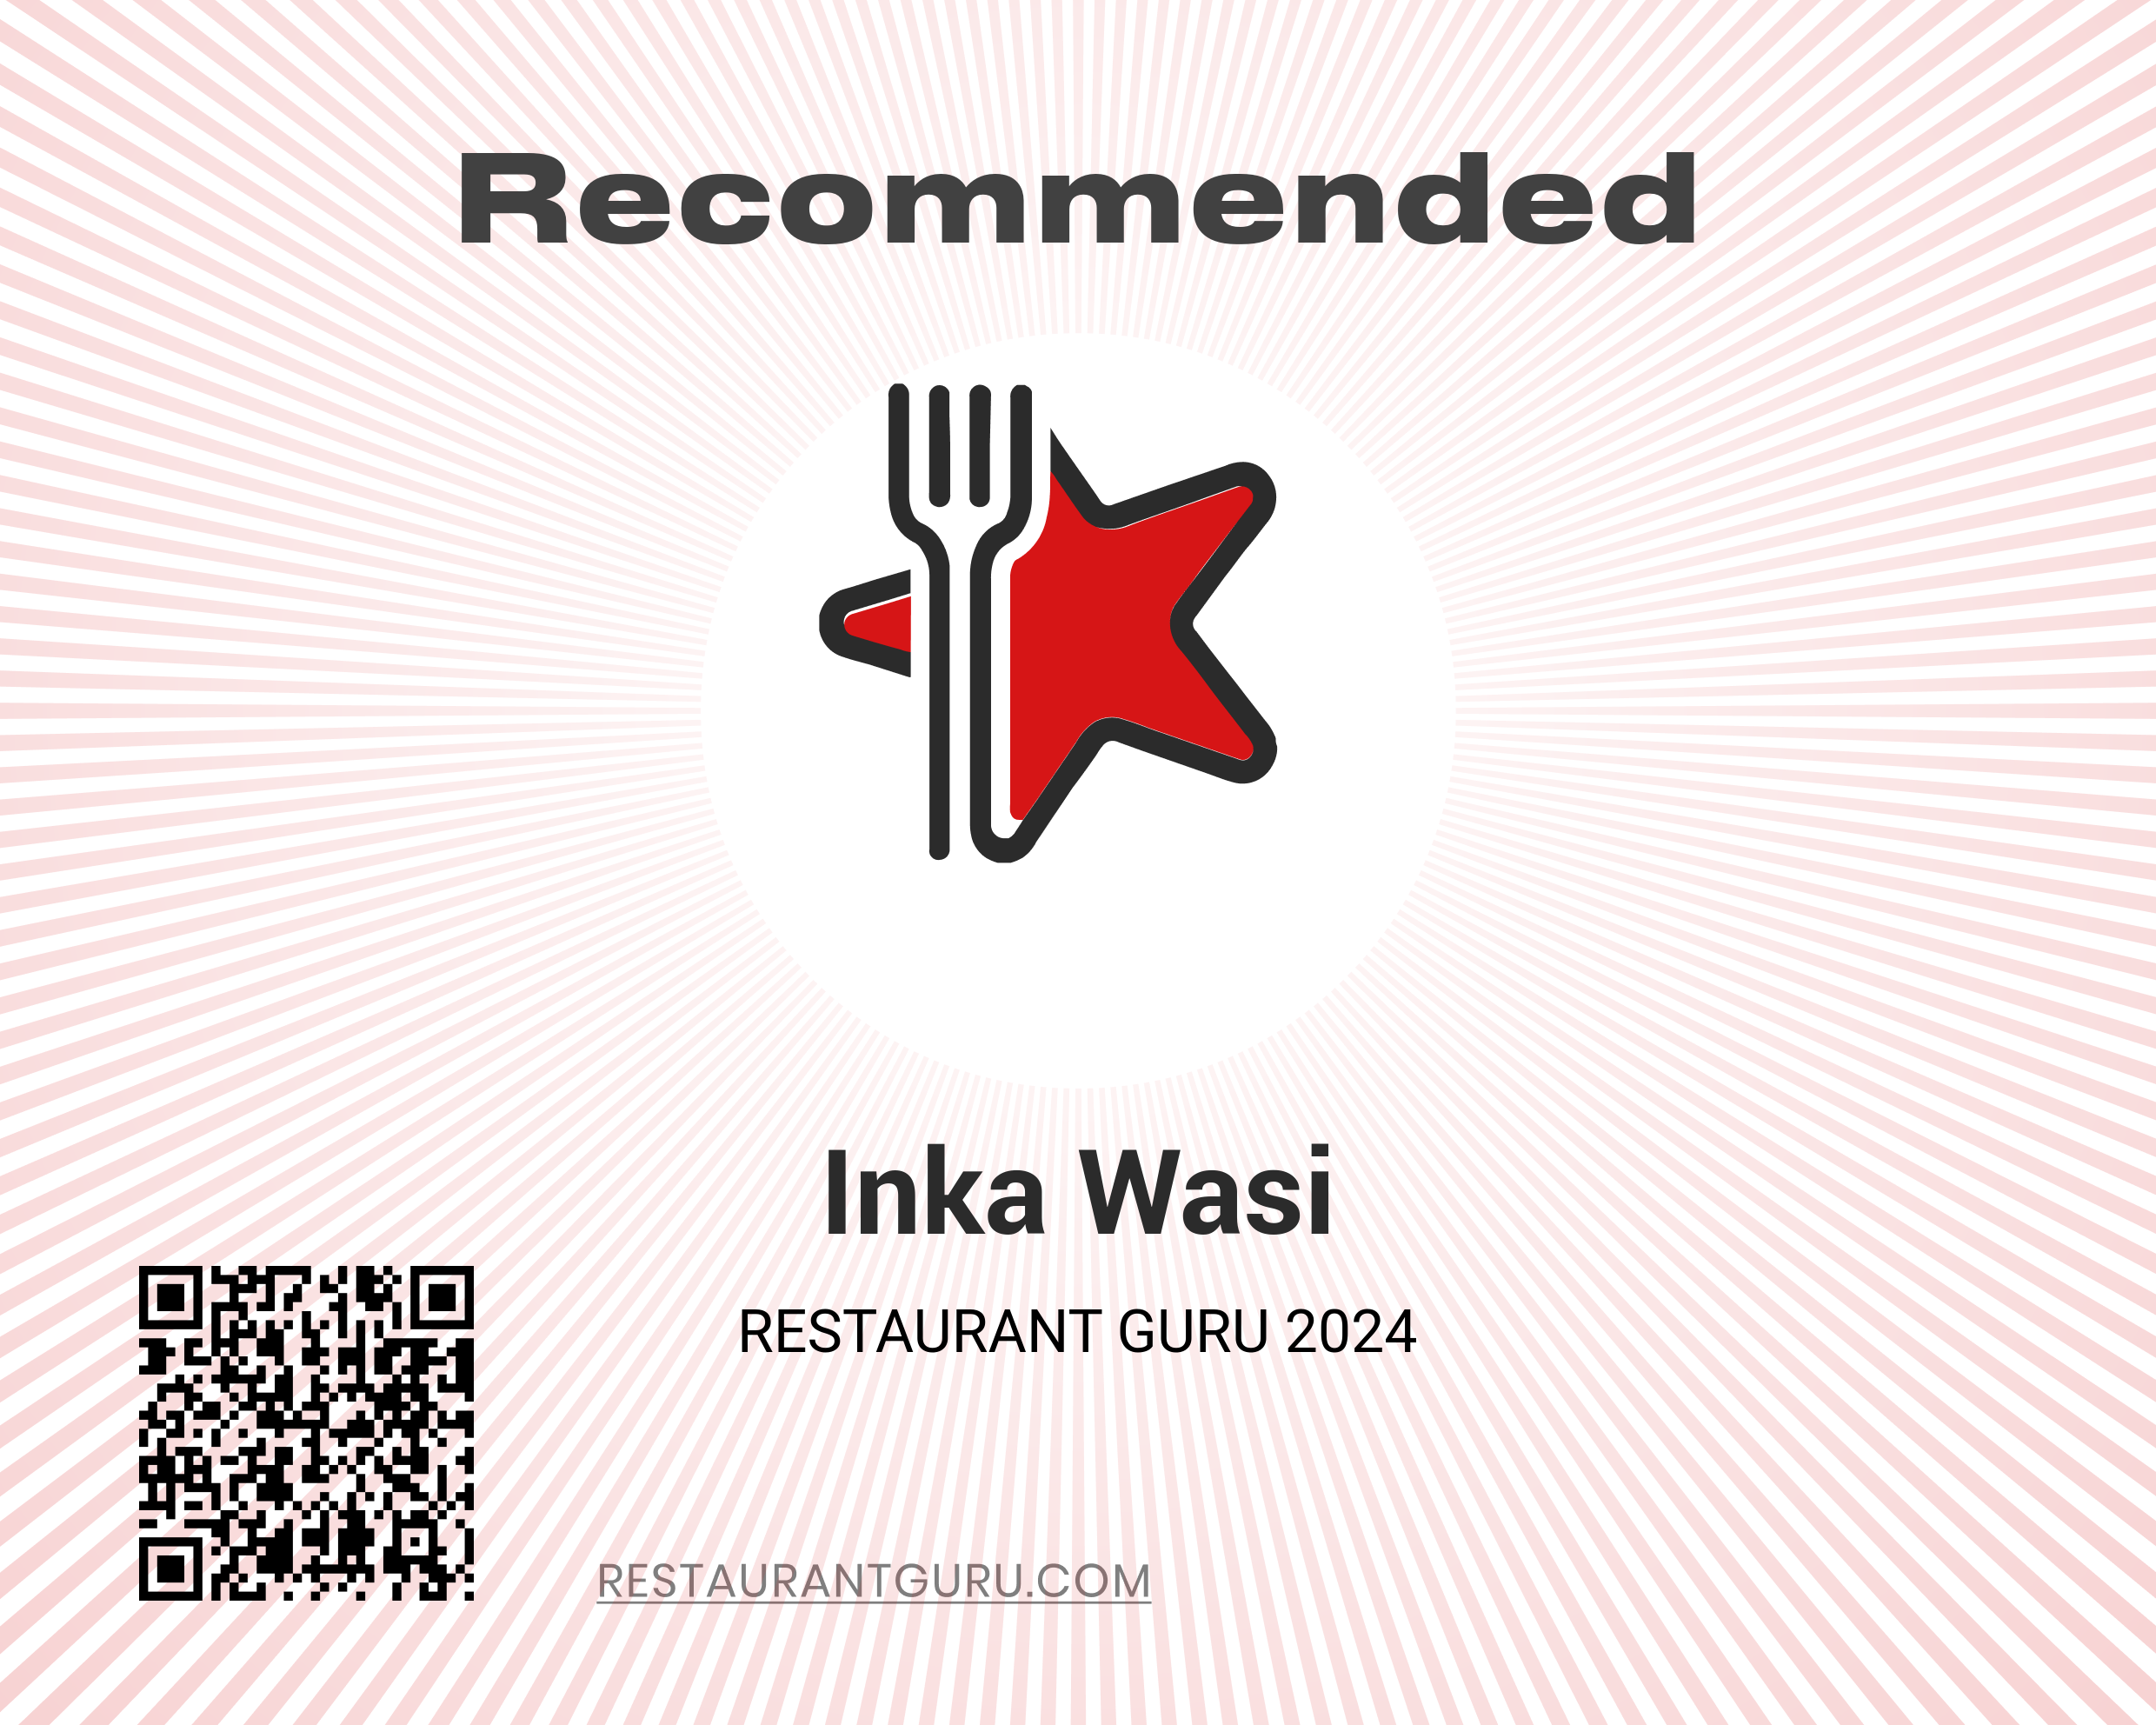 Recommended on Restaurant Guru